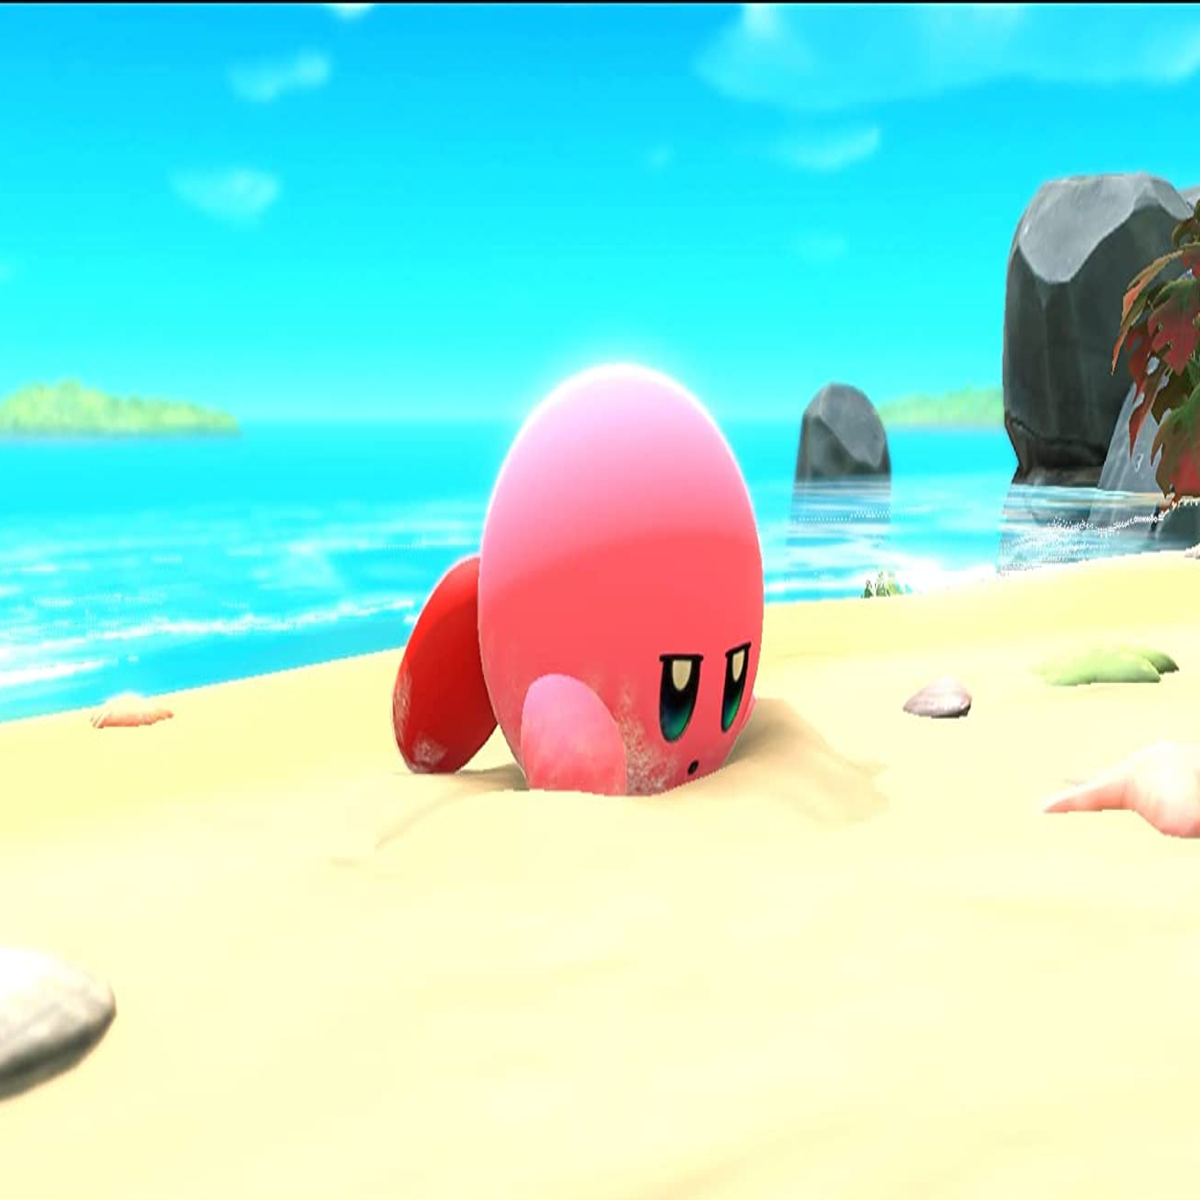 Kirby y la tierra olvidada – ¡Disponible el 25 de marzo! (Nintendo Switch)  